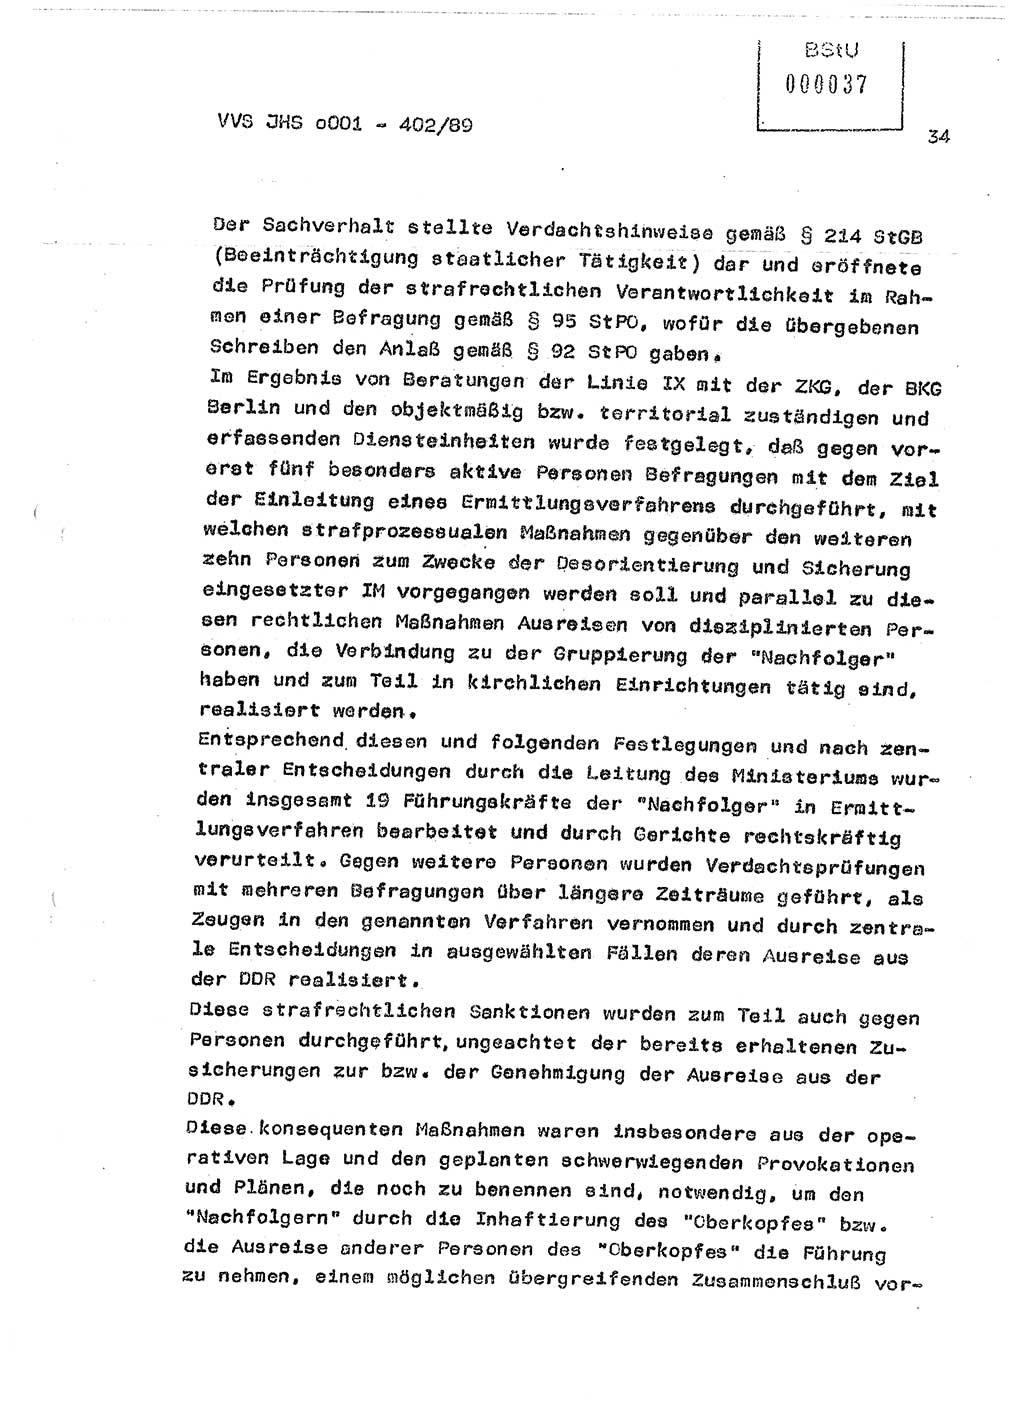 Diplomarbeit Major Günter Müller (HA Ⅸ/9), Ministerium für Staatssicherheit (MfS) [Deutsche Demokratische Republik (DDR)], Juristische Hochschule (JHS), Vertrauliche Verschlußsache (VVS) o001-402/89, Potsdam 1989, Seite 34 (Dipl.-Arb. MfS DDR JHS VVS o001-402/89 1989, S. 34)